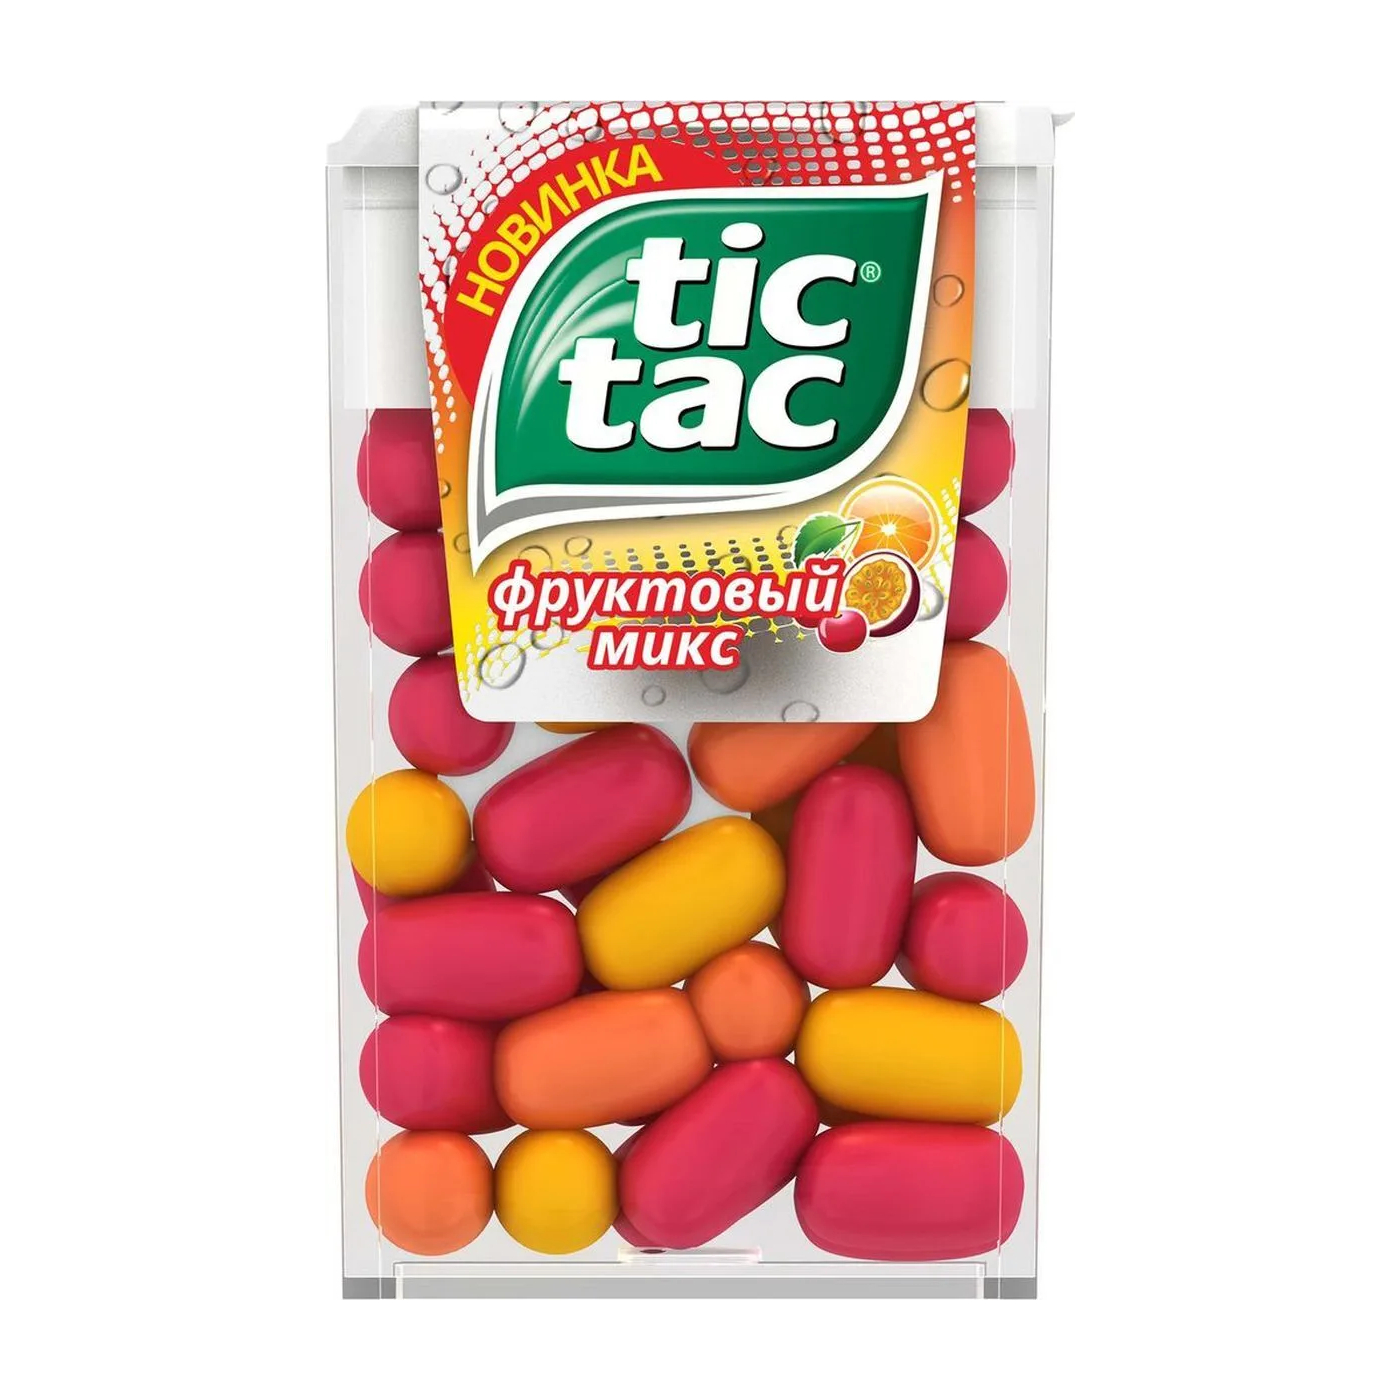 Драже Tic Tac фруктовый микс, 16 г драже tictac 16г фруктовый микс